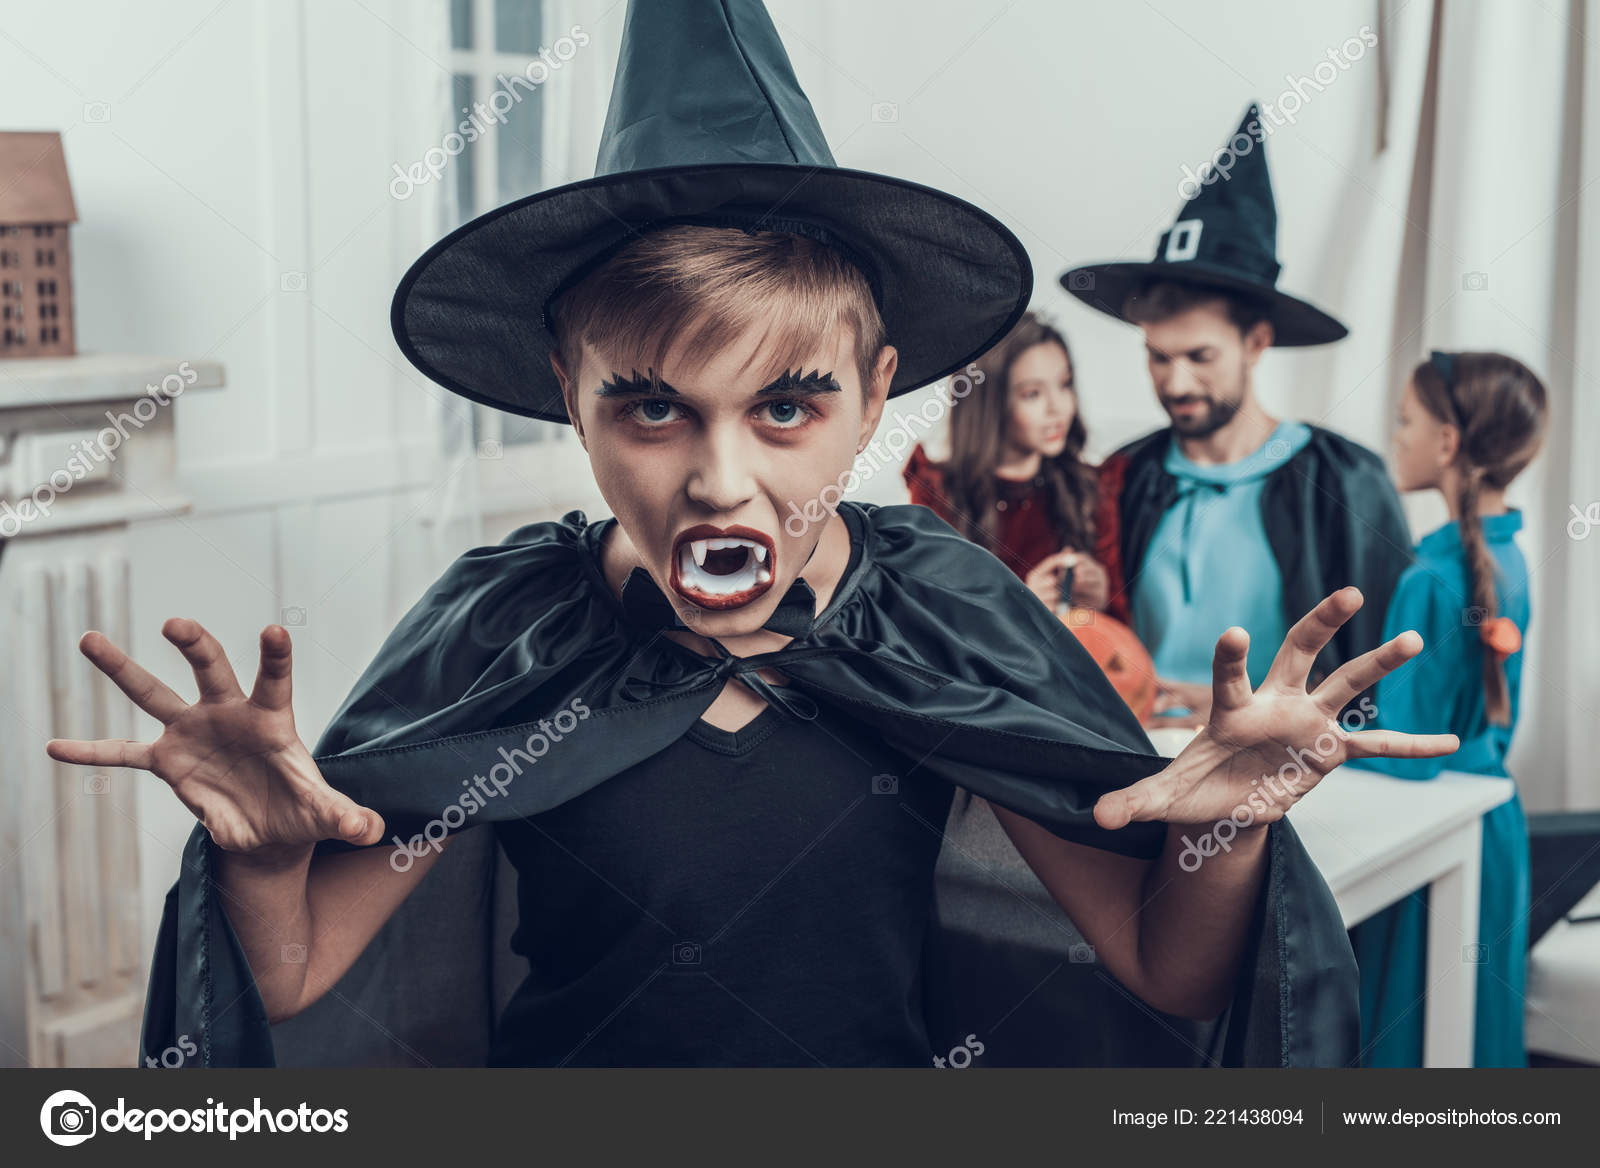 Retrato Boy Wearing Fantasia Halloween Assustador Homem Bonito Adulto  Crianças fotos, imagens de © vadimphoto1@gmail.com #221462870